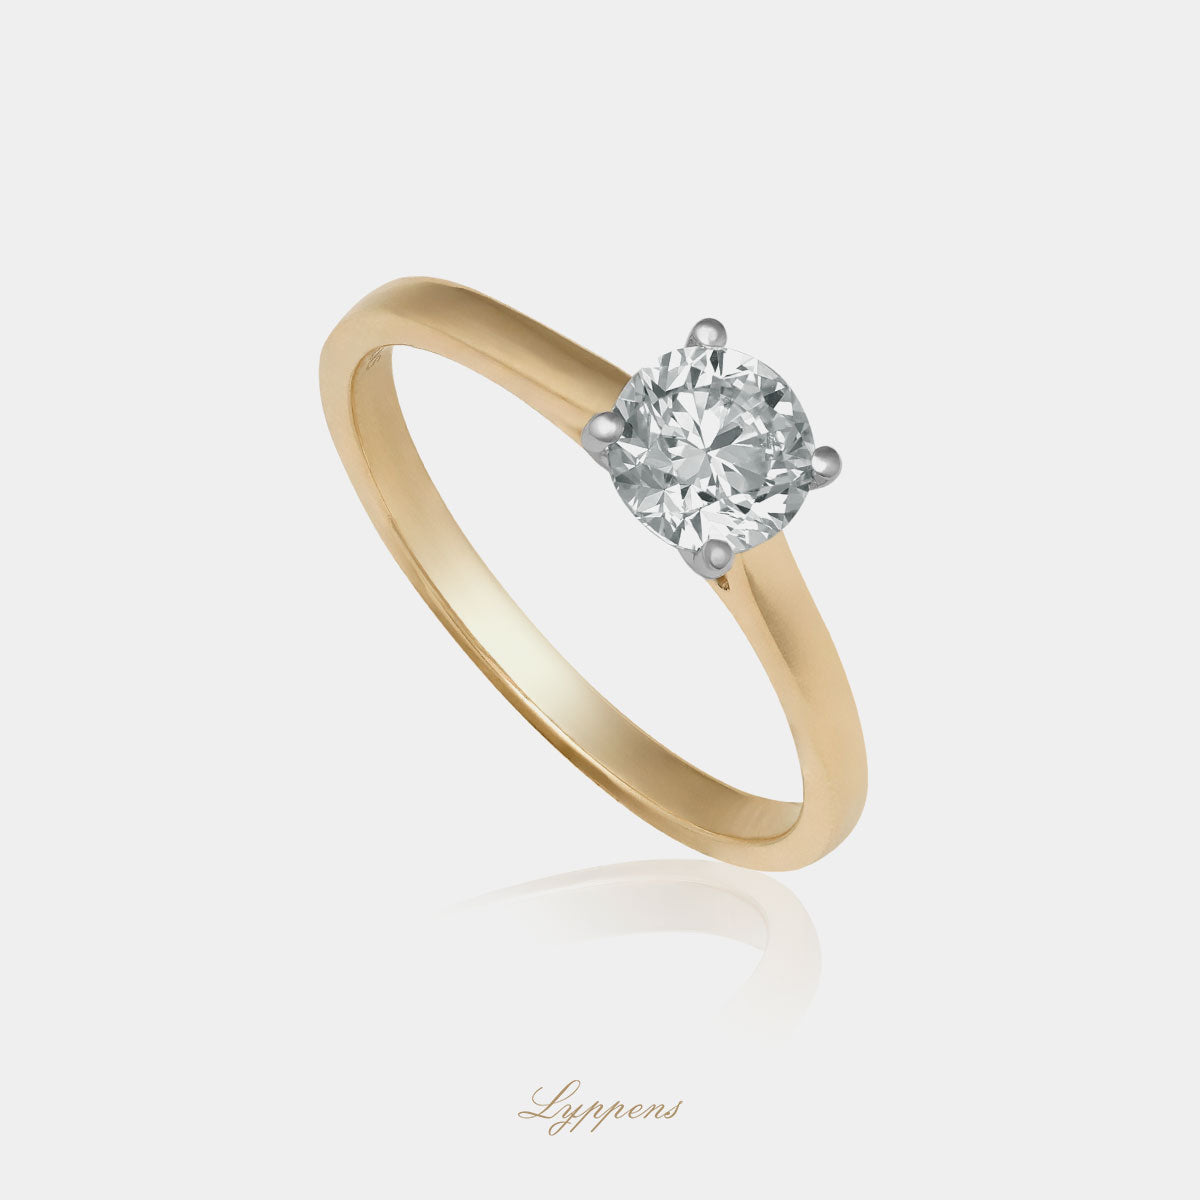 Staande geelgouden solitair verlovingsring, deze ring is in het midden gezet met een briljant geslepen diamant.